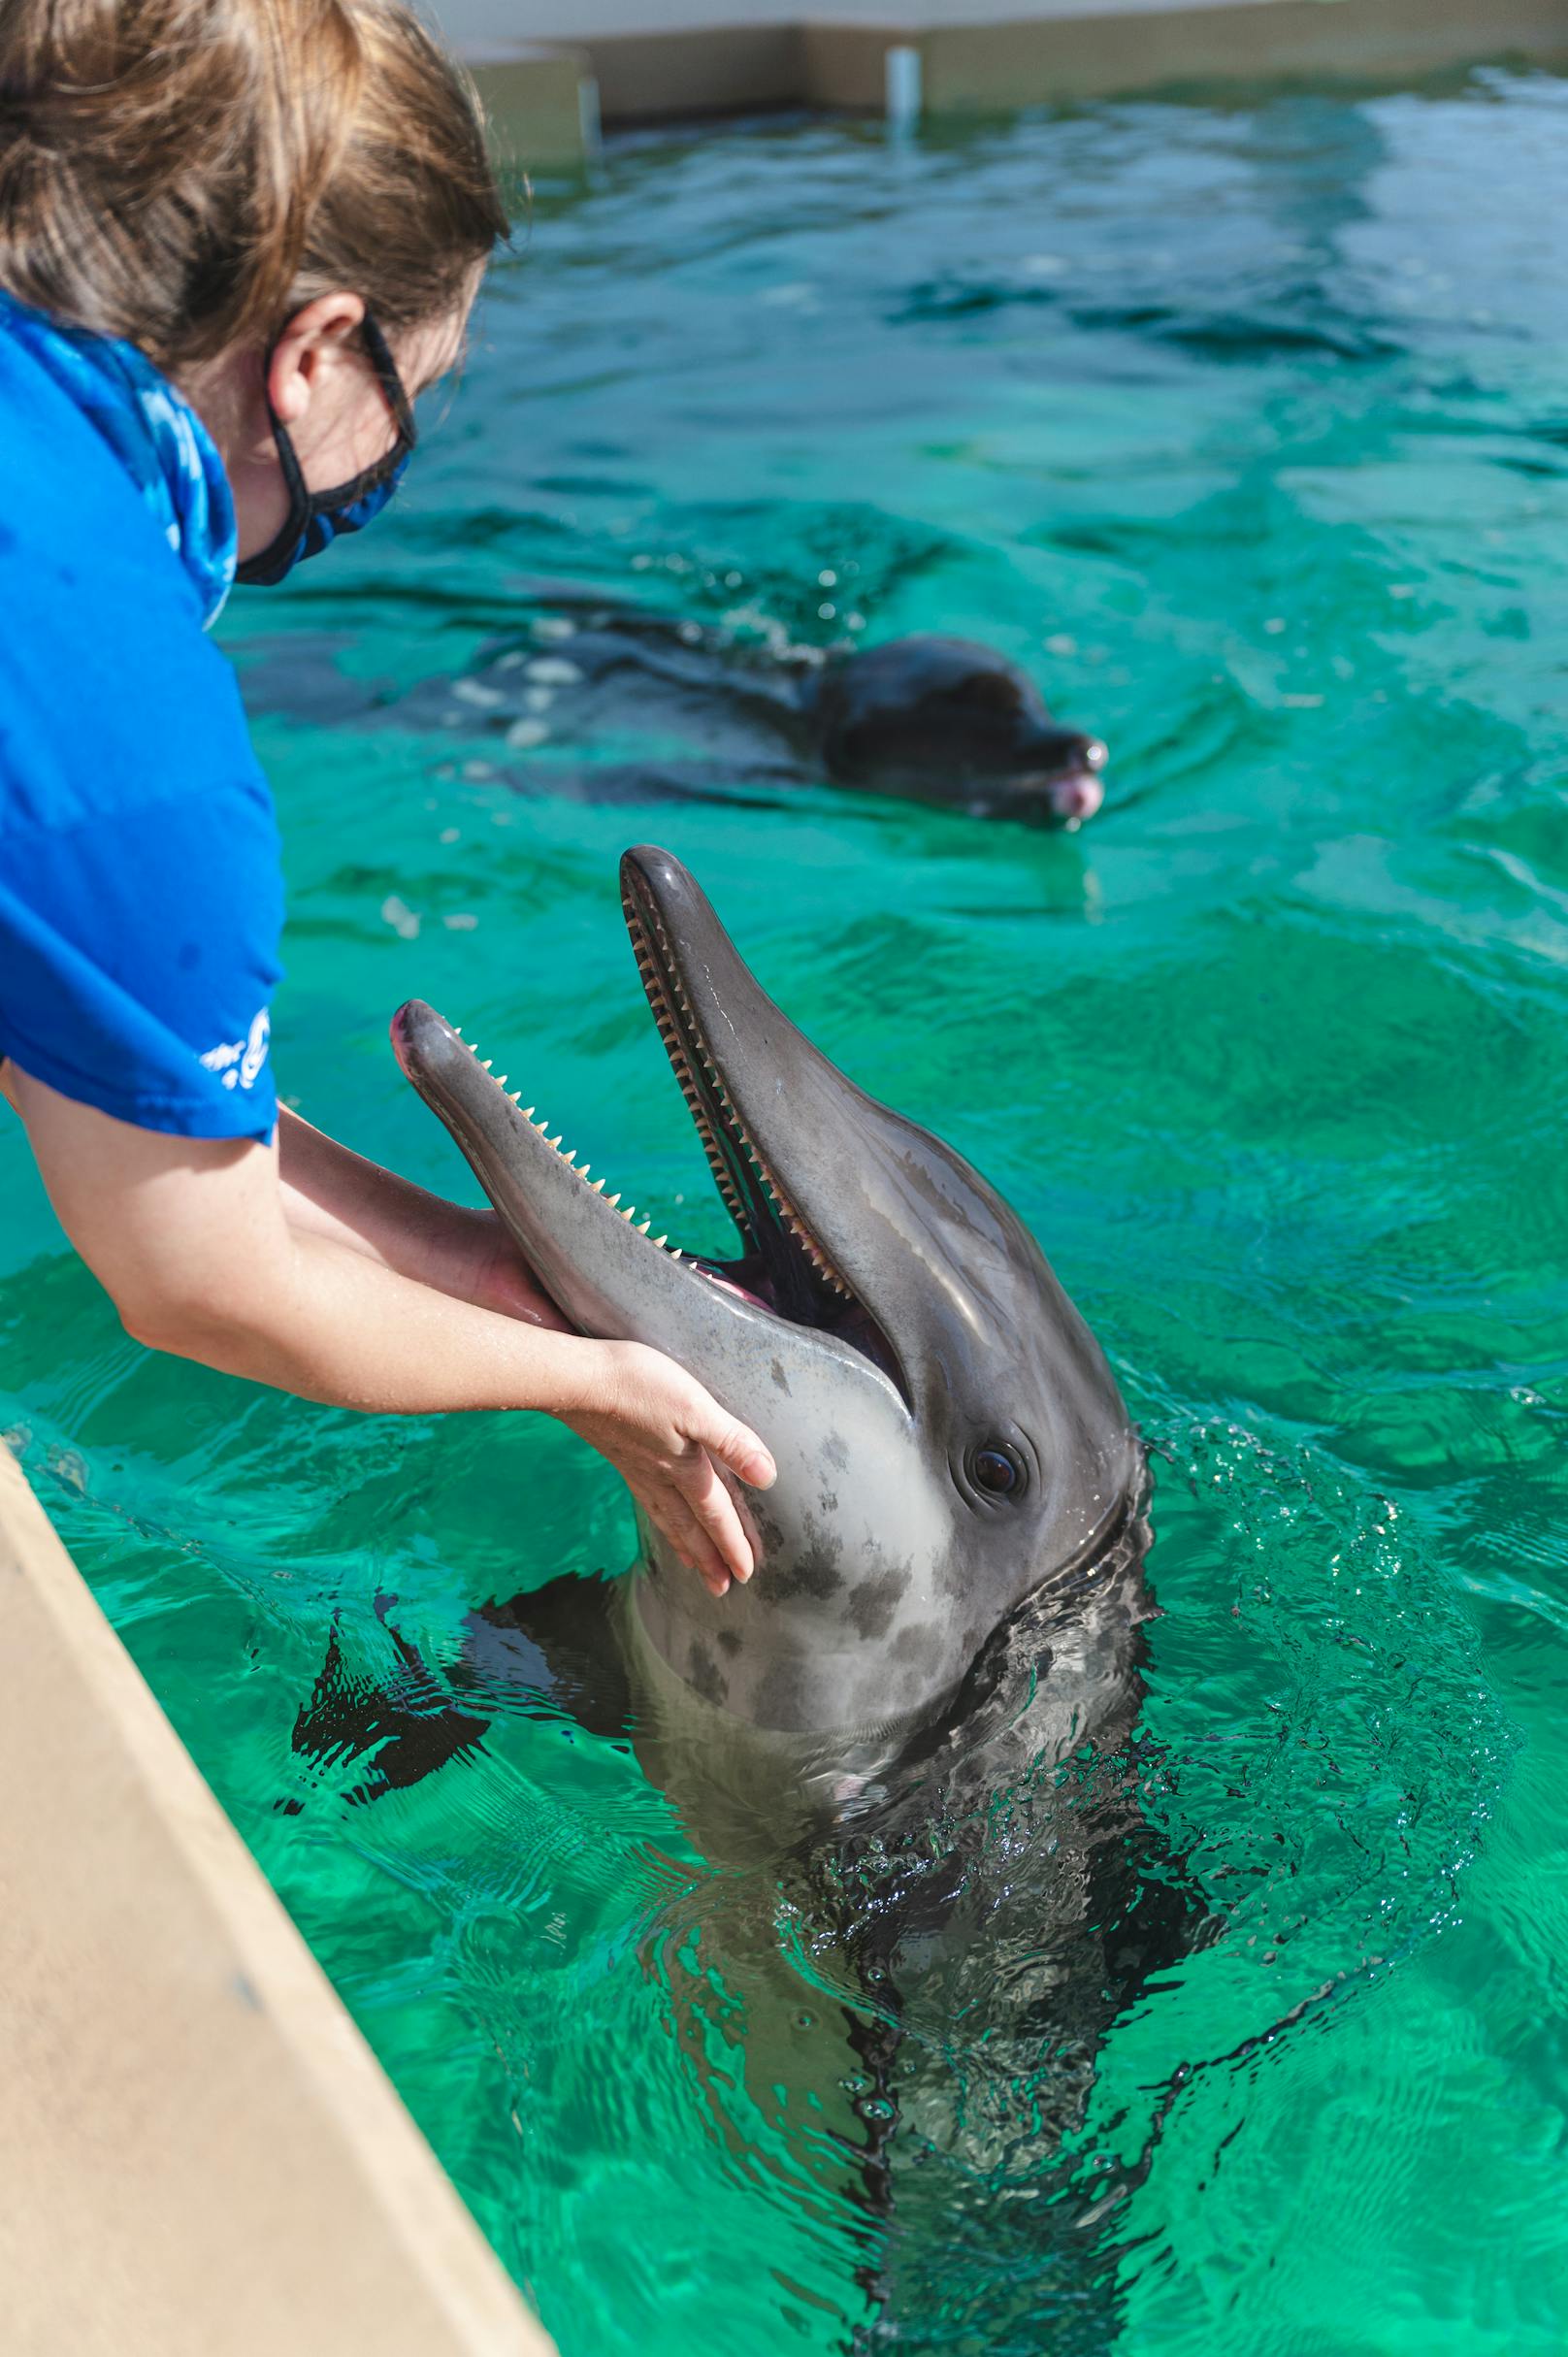 Winter lebt seit 10 Jahren im Aquarium. Sie ist der einzige Delfin mit einer Flossenprothese. <br>